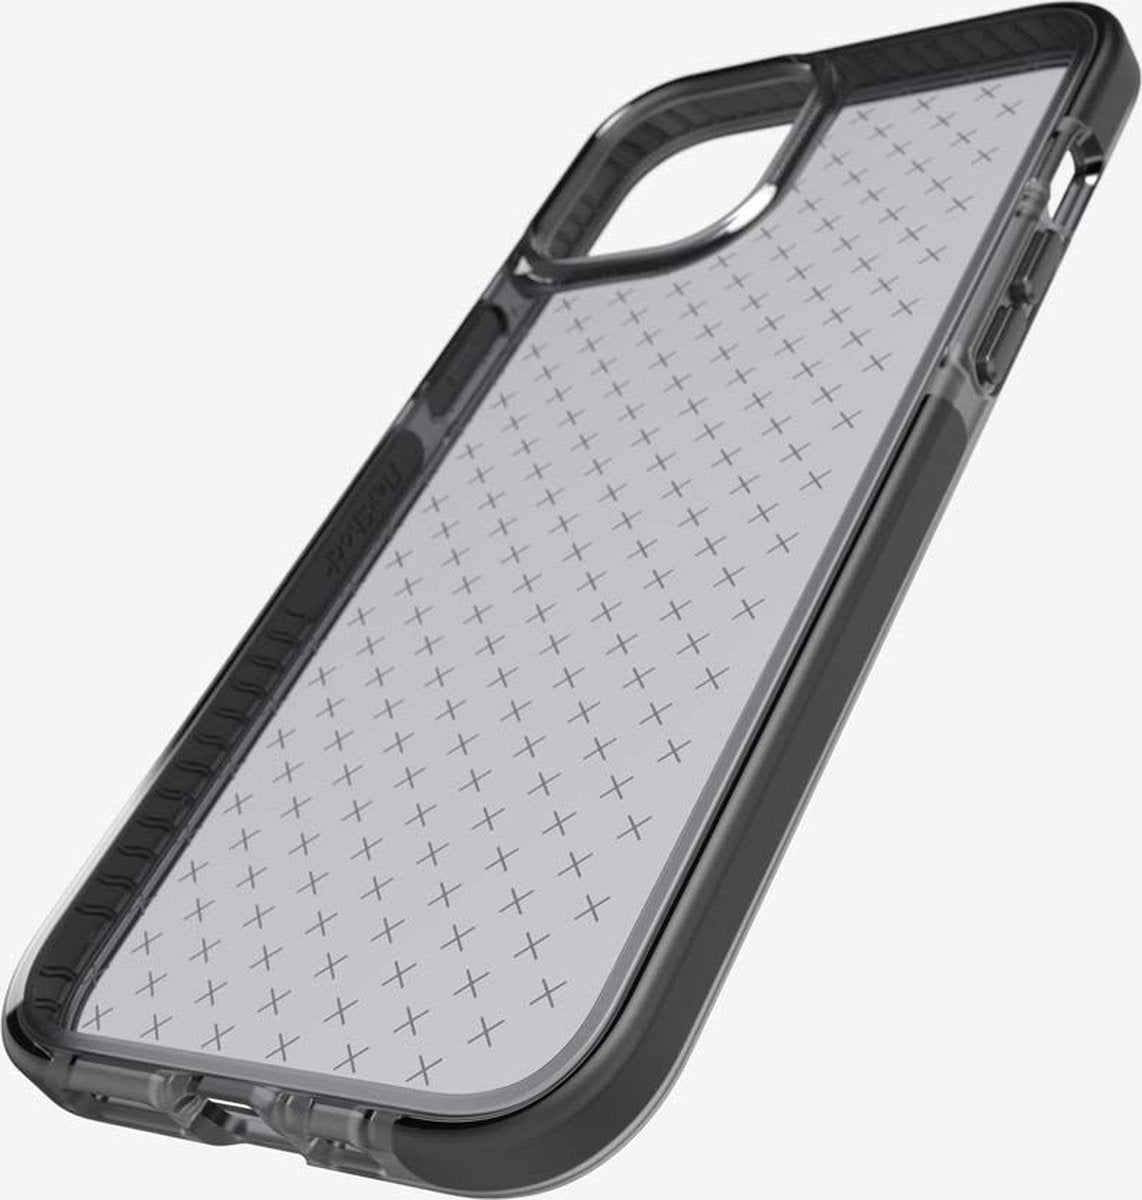 Tech21 Evo Check iPhone 12 Pro Max Case Black